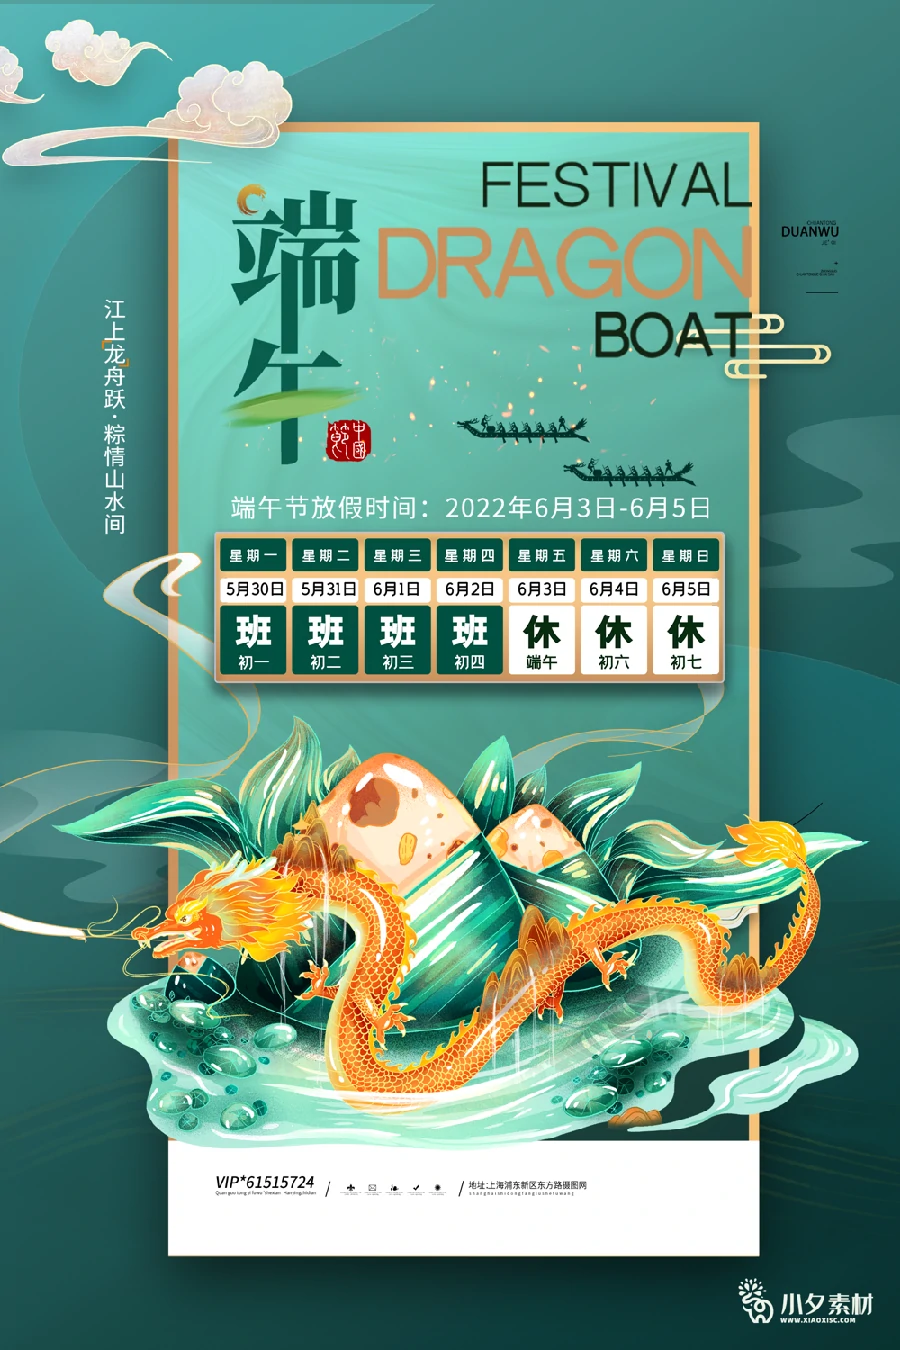 2022中国风传统节日端午节粽子放假通知海报模板PSD分层设计素材 【024】